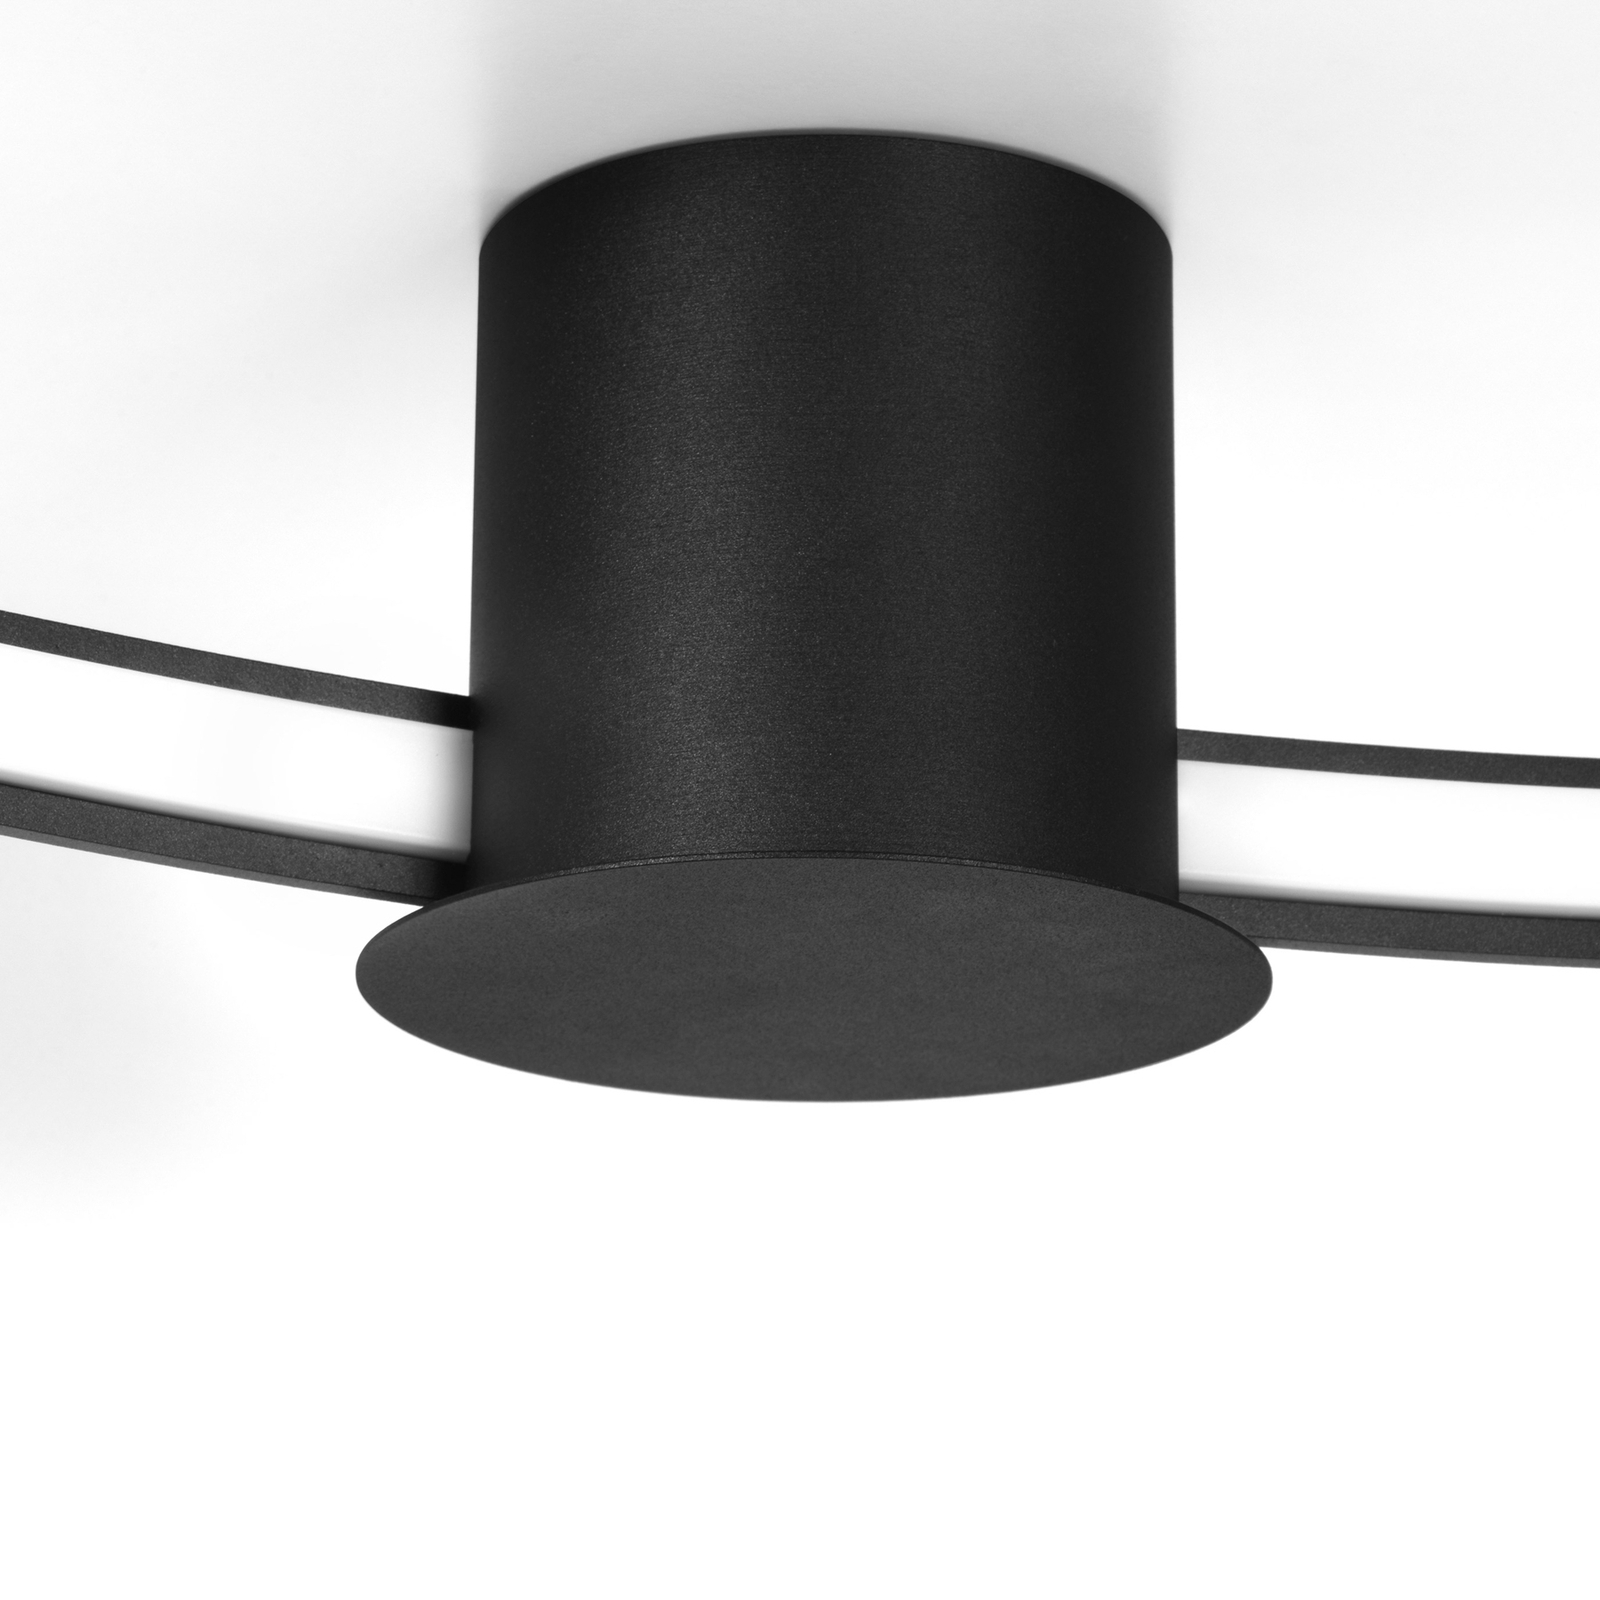 Plafonnier LED Rio 78, Ra95, 4 000 K, noir